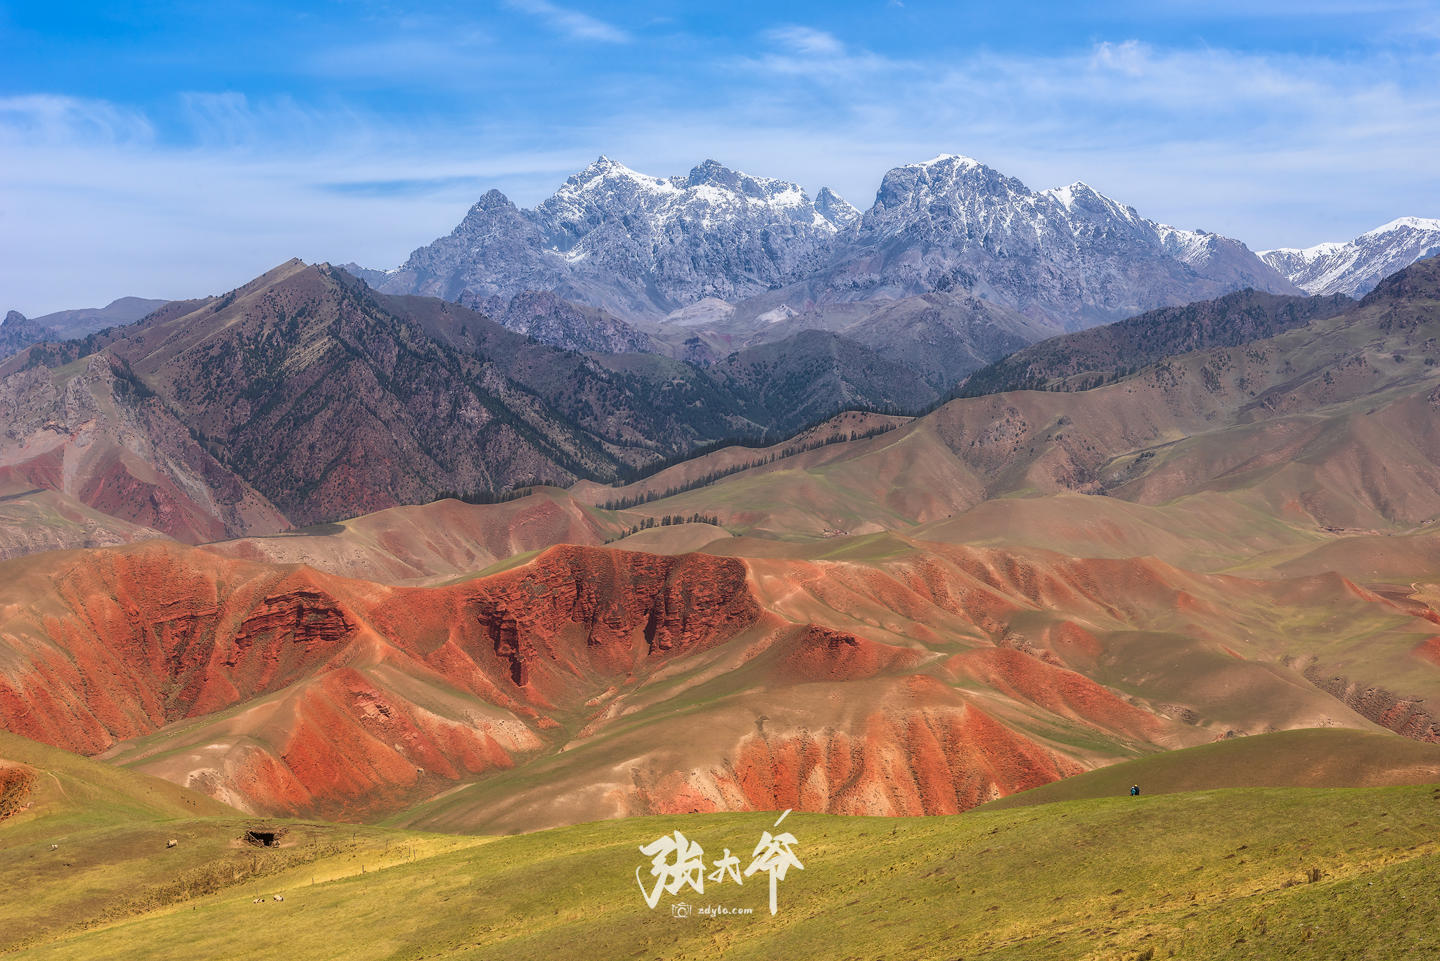 Red Zhuo'er Mountain